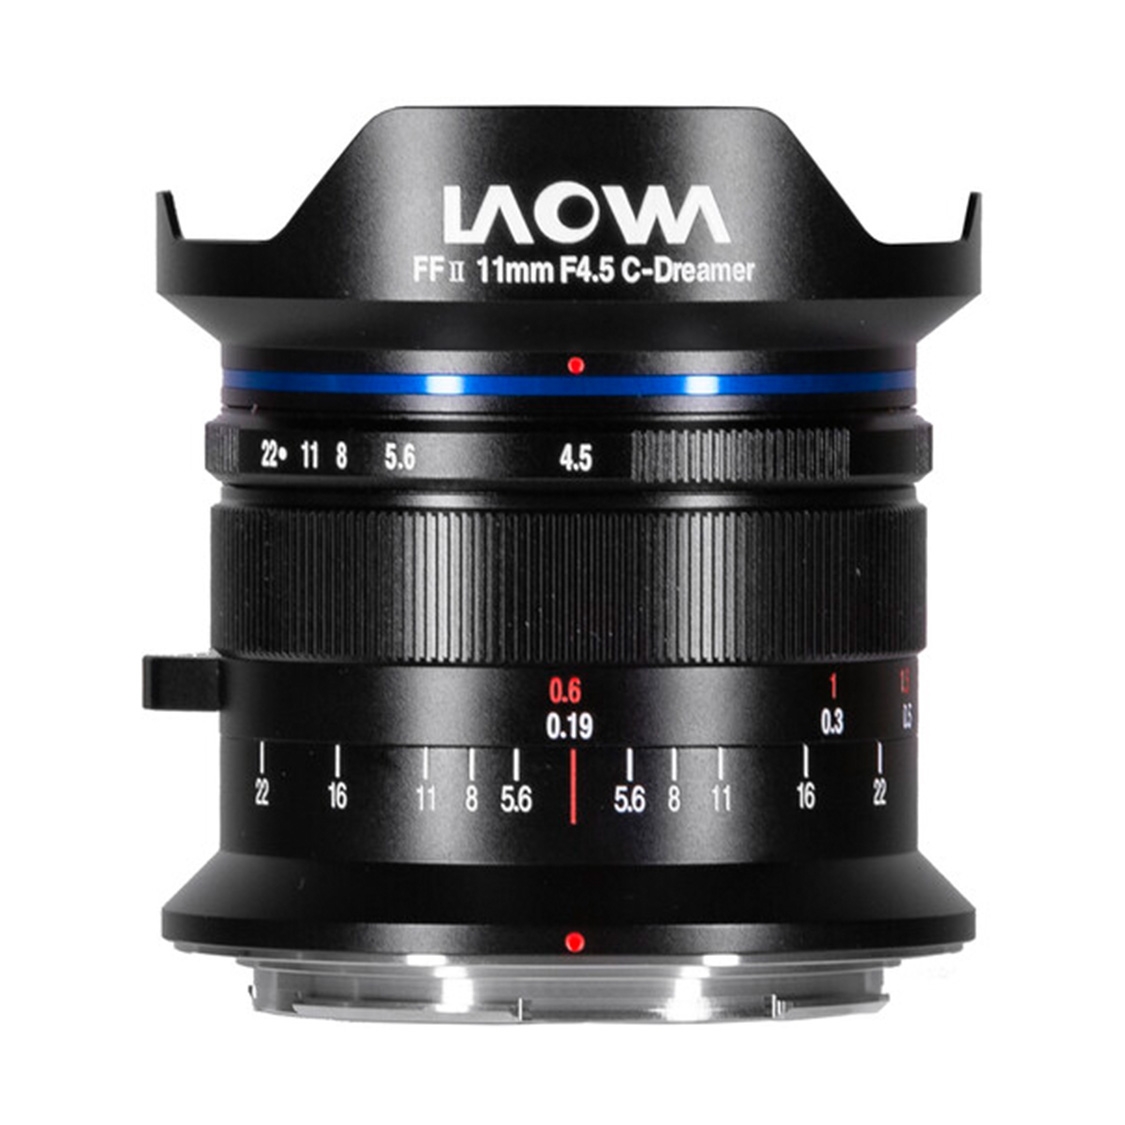 Laowa 11mm f4.5 FF RL Lens for Nikon Z Mount